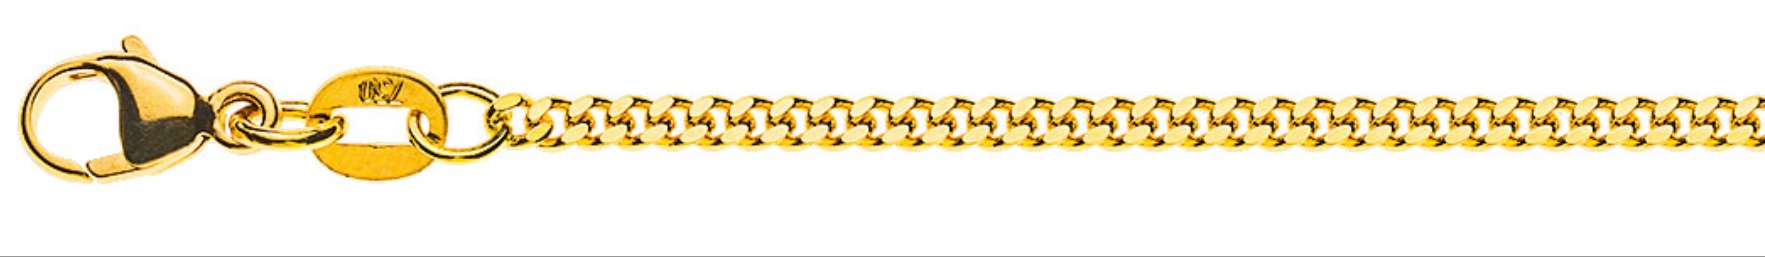 AURONOS Prestige Halskette Gelbgold 18K Panzerkette geschliffen 60cm 2.0mm